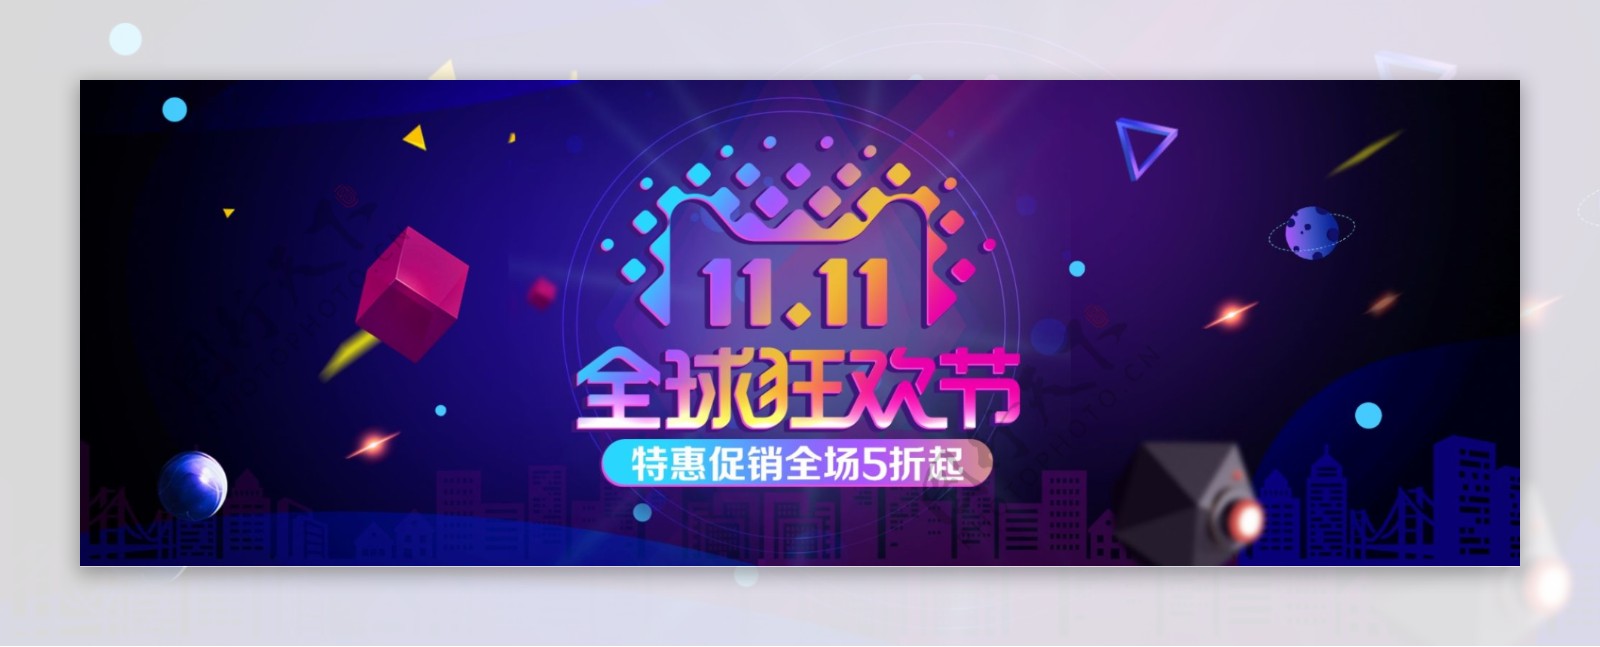 紫黑炫酷科技双十一狂欢节电商banner电商淘宝双11